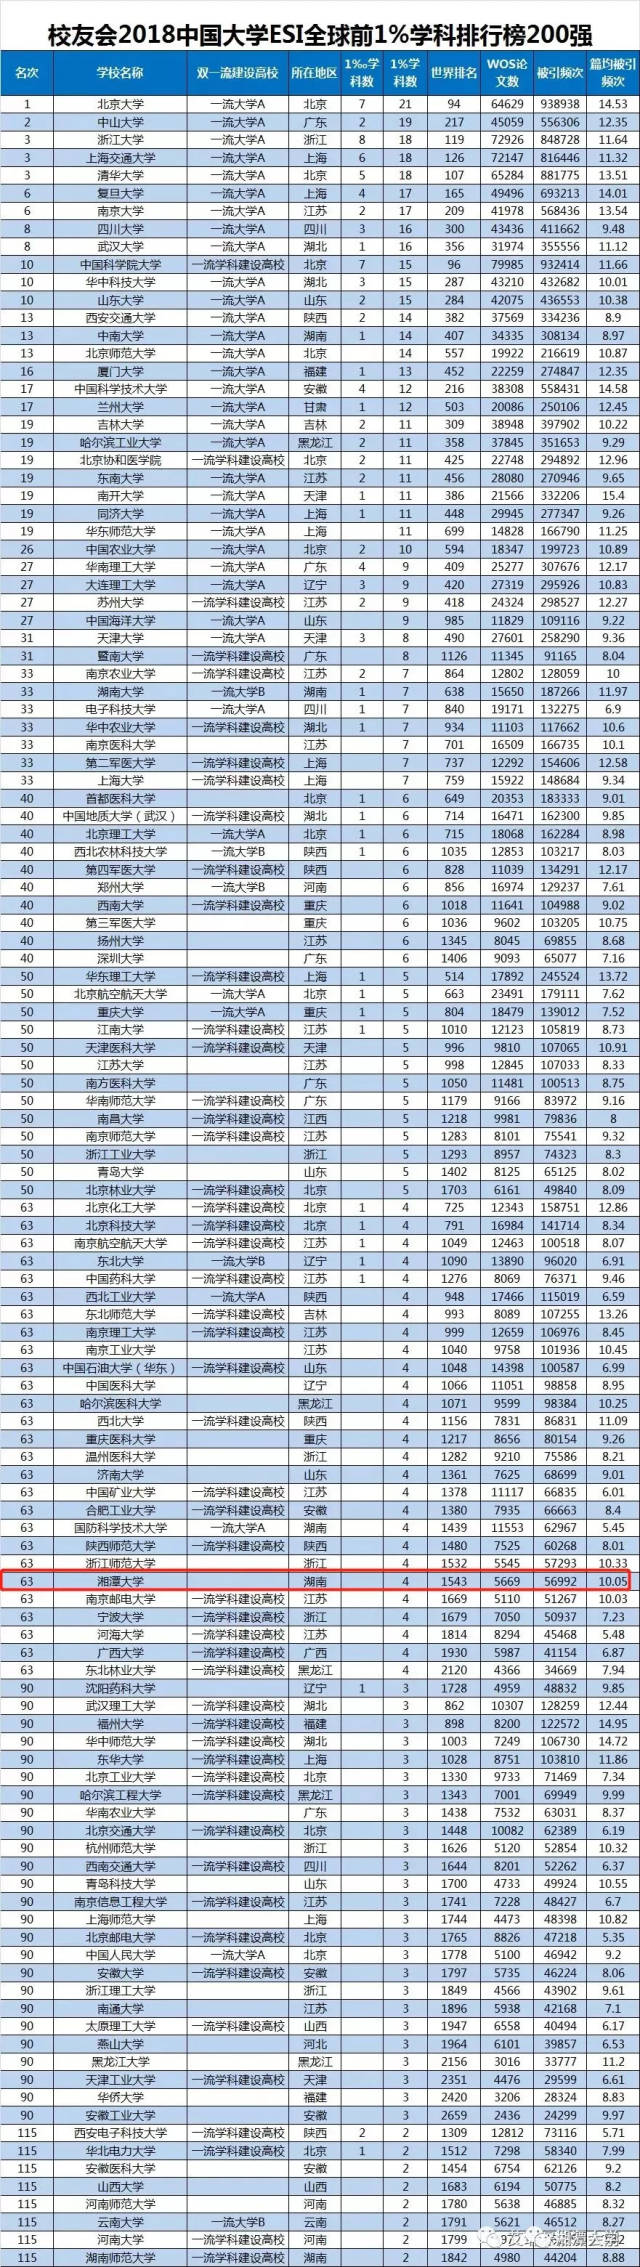 2018年大学esi全球前1%学科排名公布,湘潭大学排名63